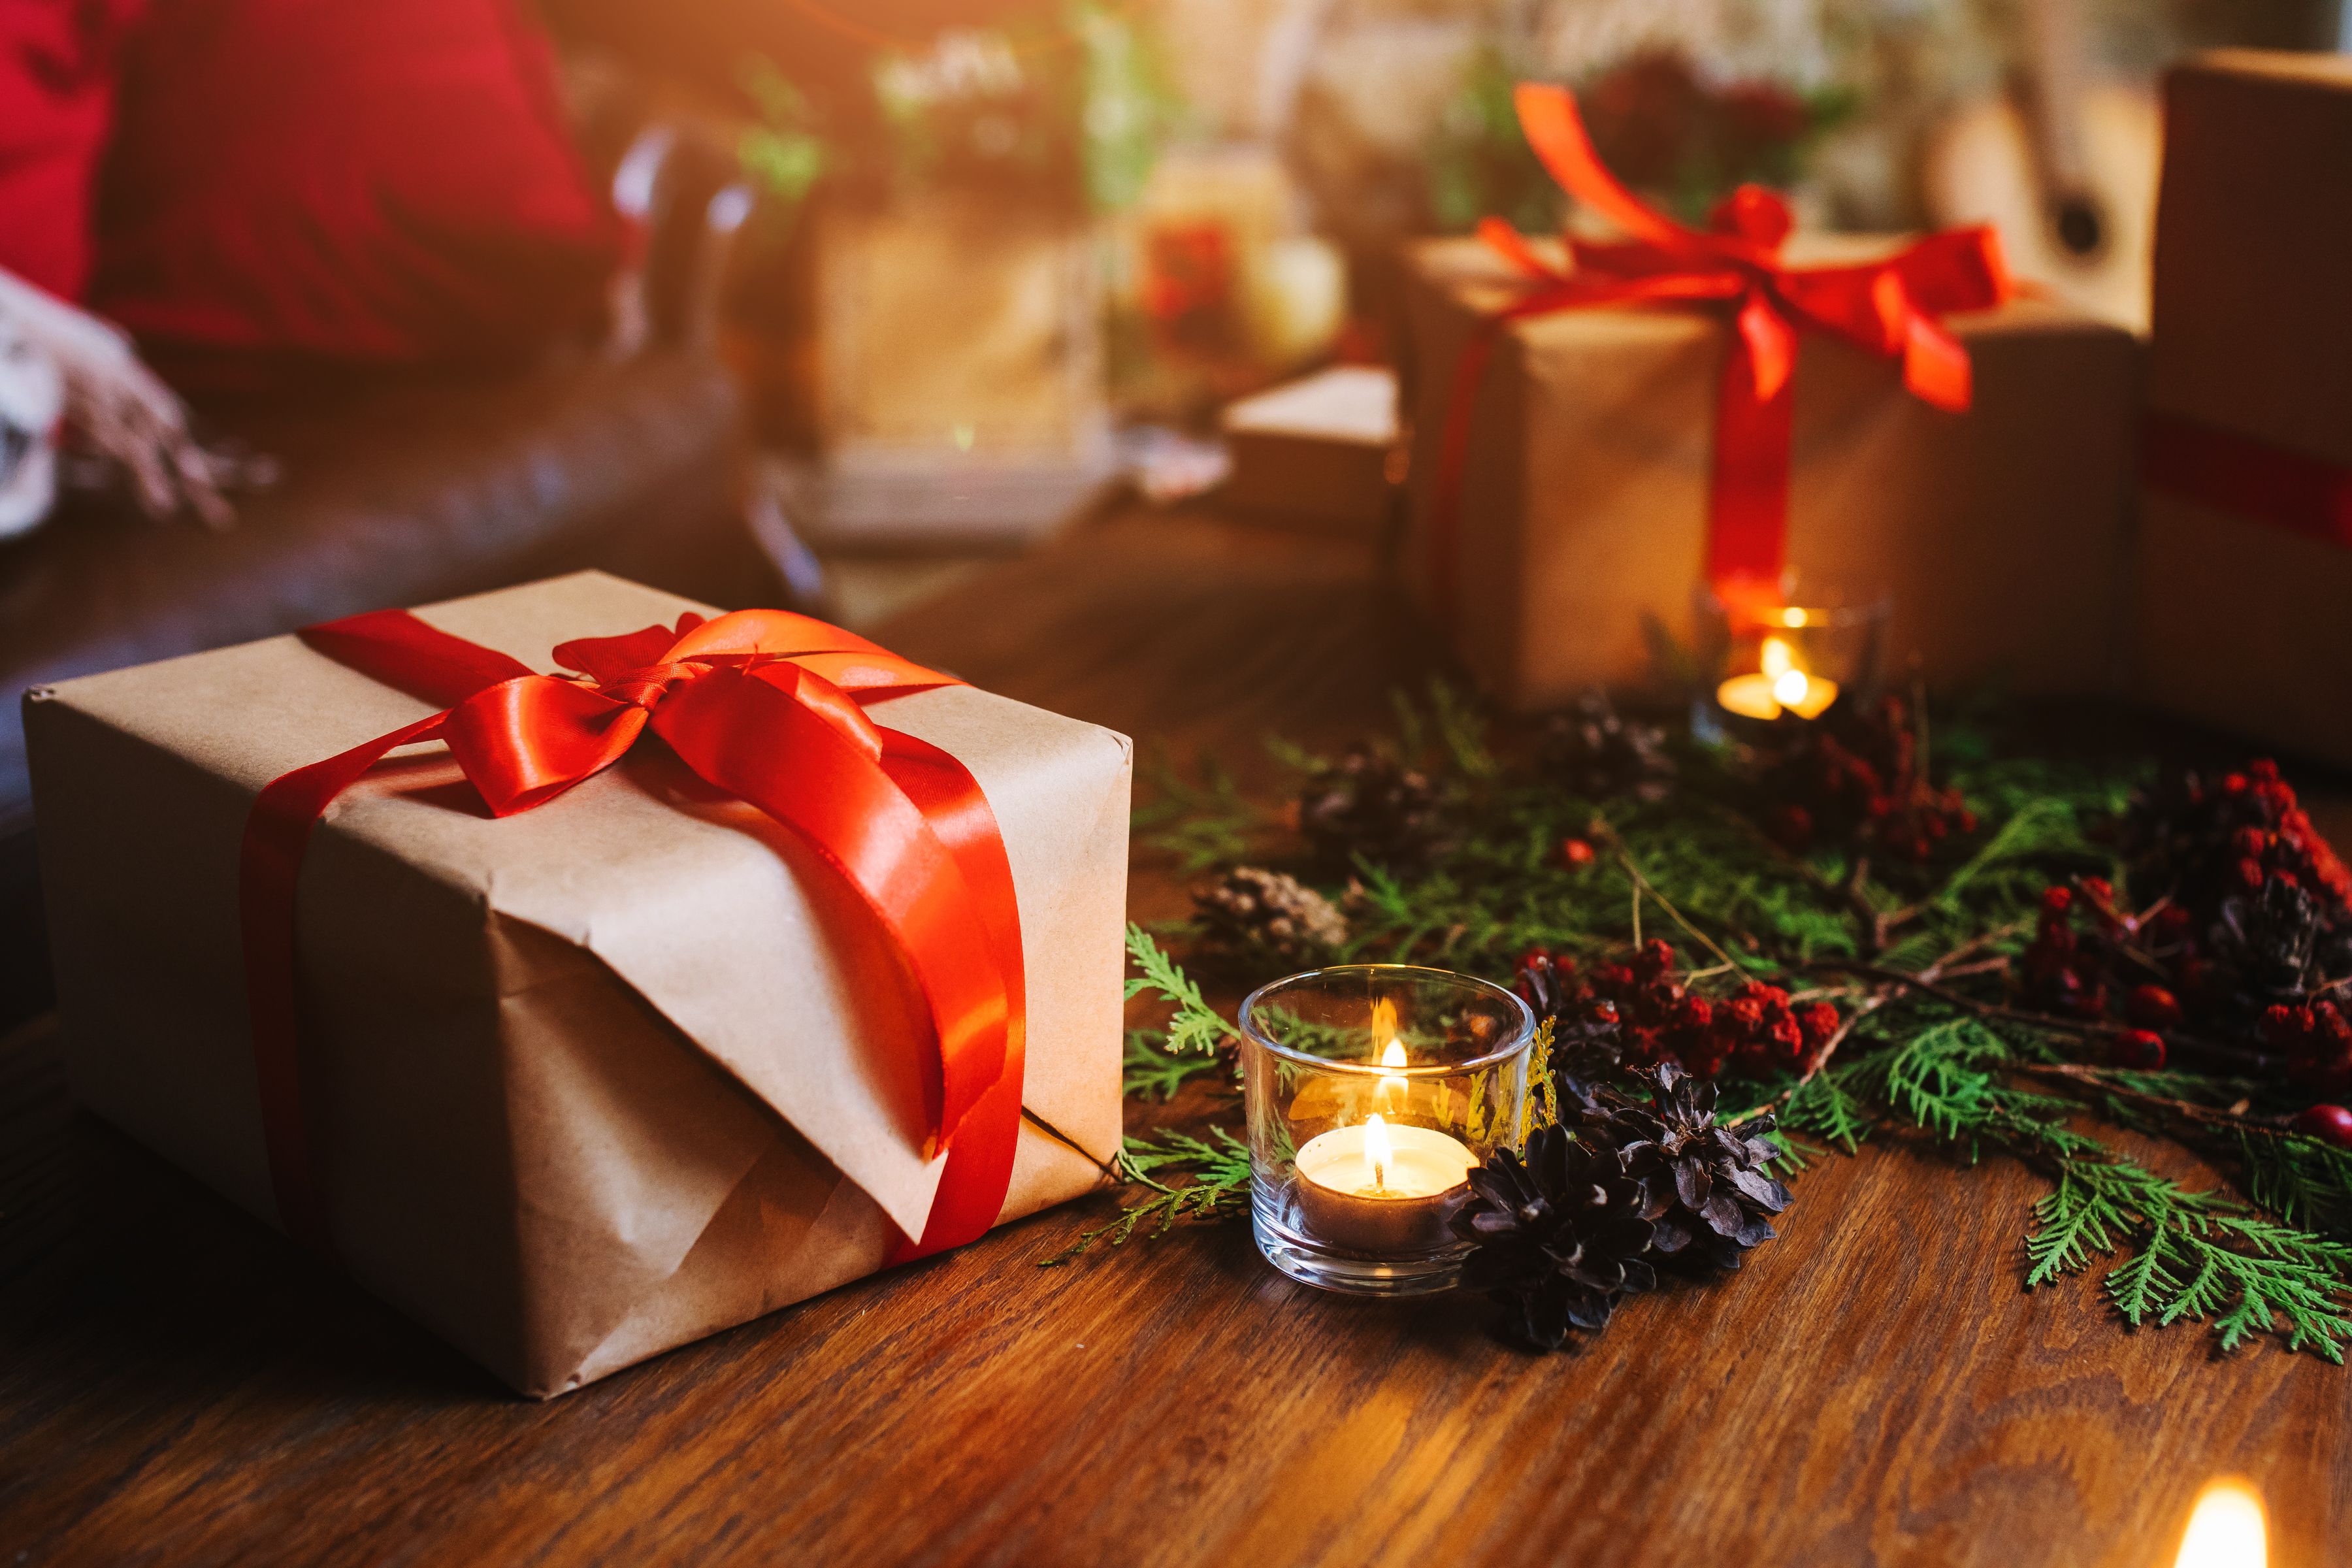 Де купити подарунки на свята: 10 новорічних ярмарків в Україні 